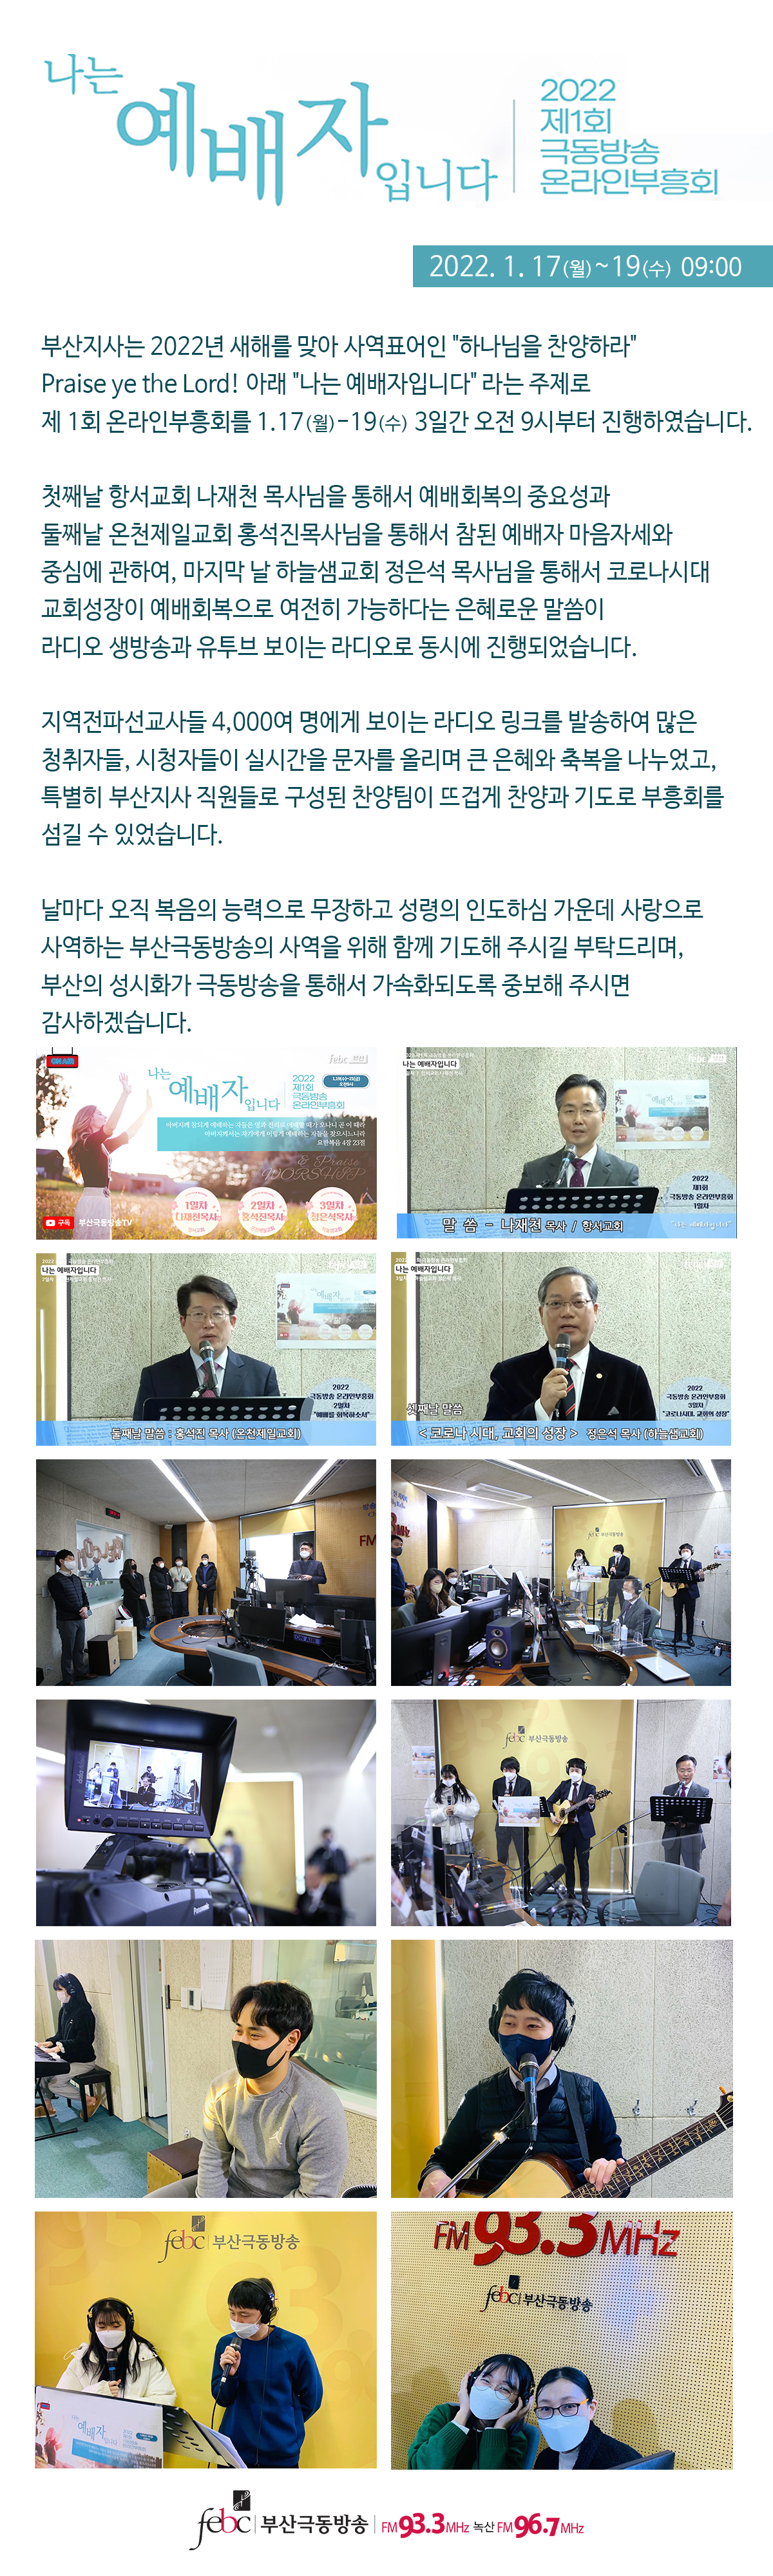 2022_제 1회 온라인 부흥회 인트라 게시판.jpg